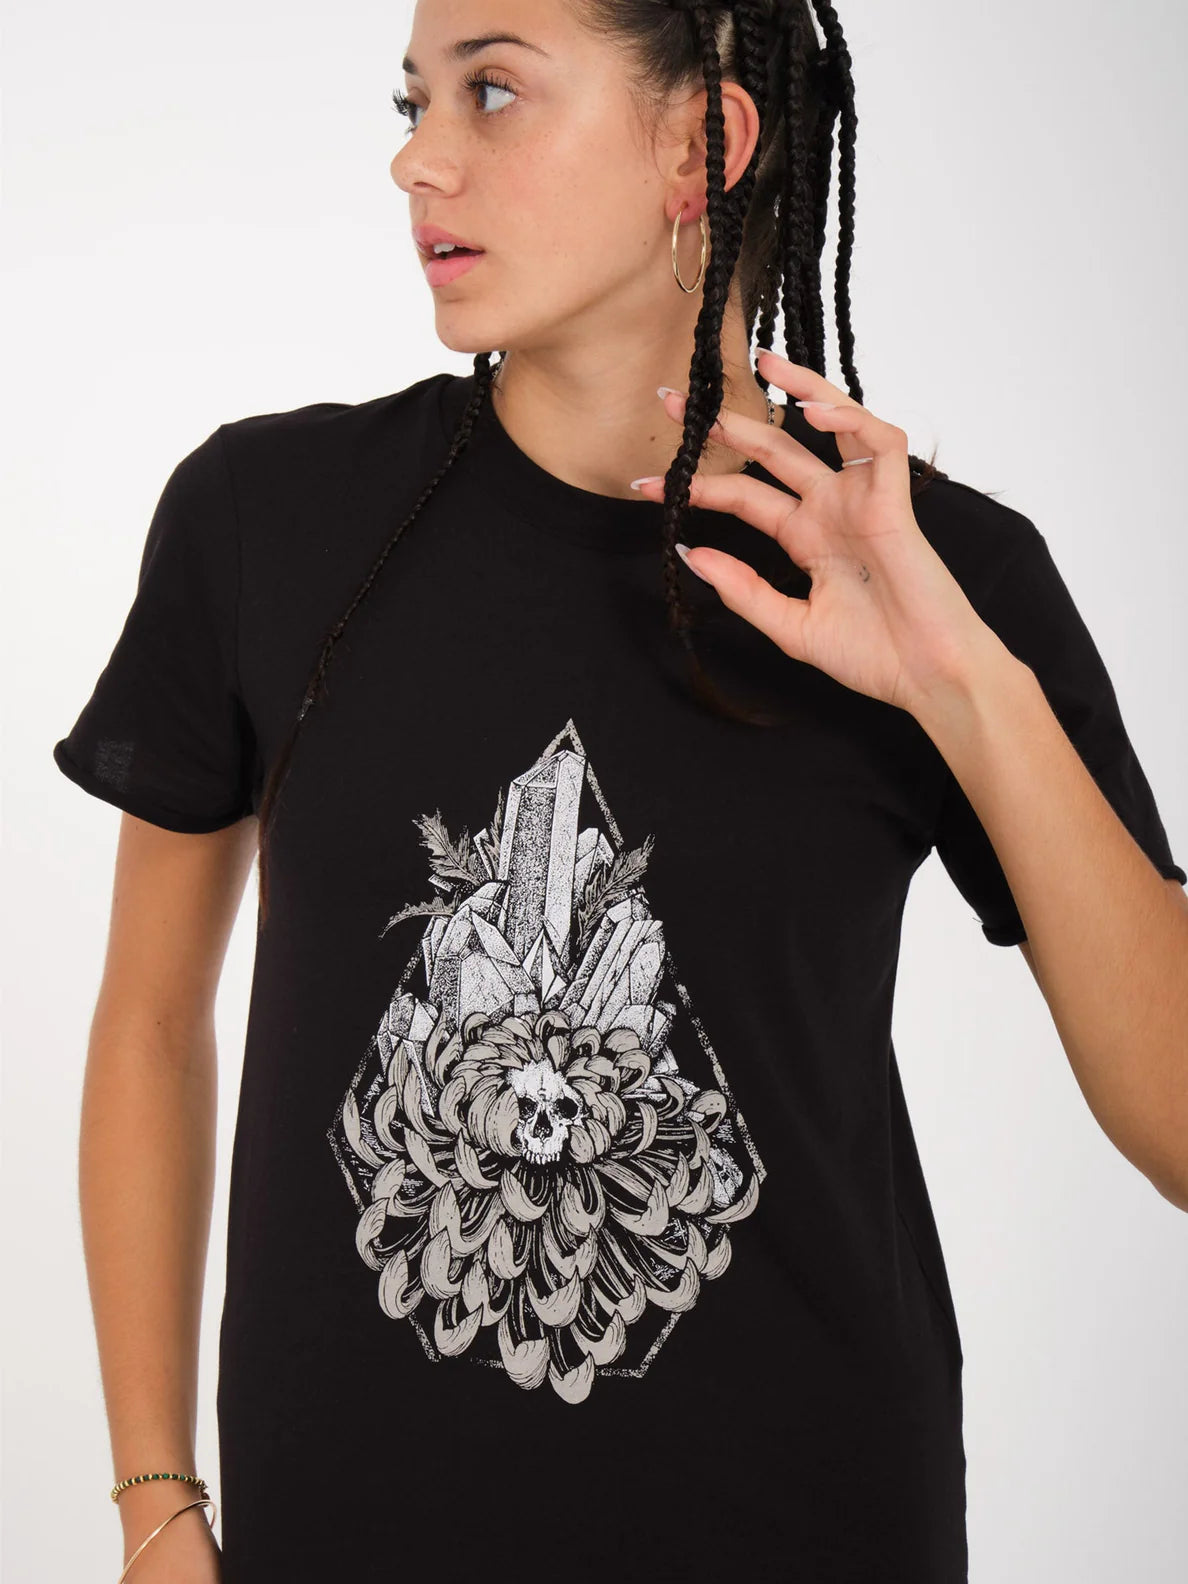 Volcom Radical Daze Mädchen T-Shirt – Schwarz | Meistverkaufte Produkte | Neue Produkte | Neueste Produkte | surfdevils.com